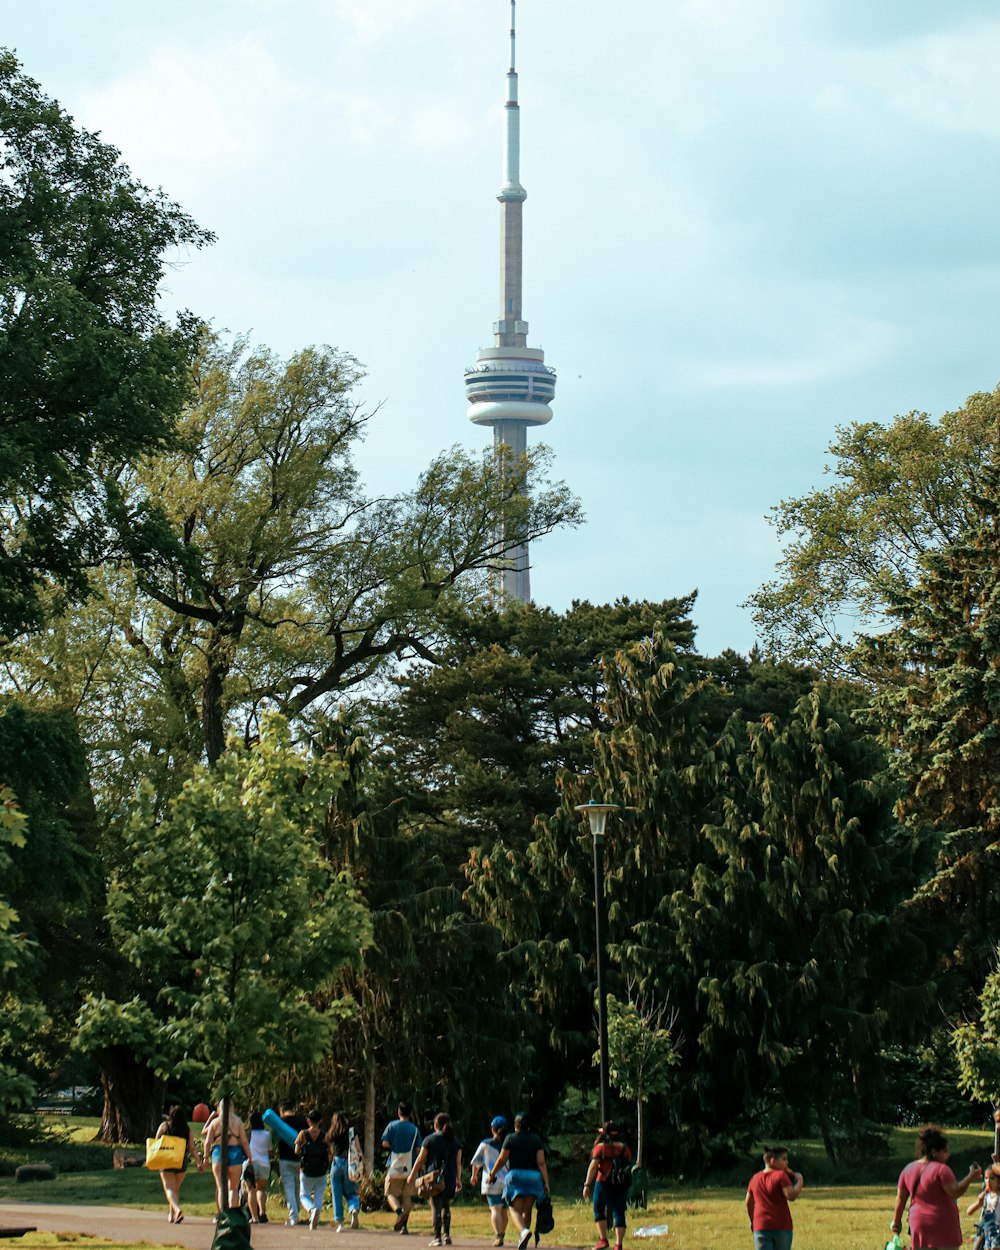 Un groupe de personnes marchant dans un parc avec une haute tour pointue en arrière-plan